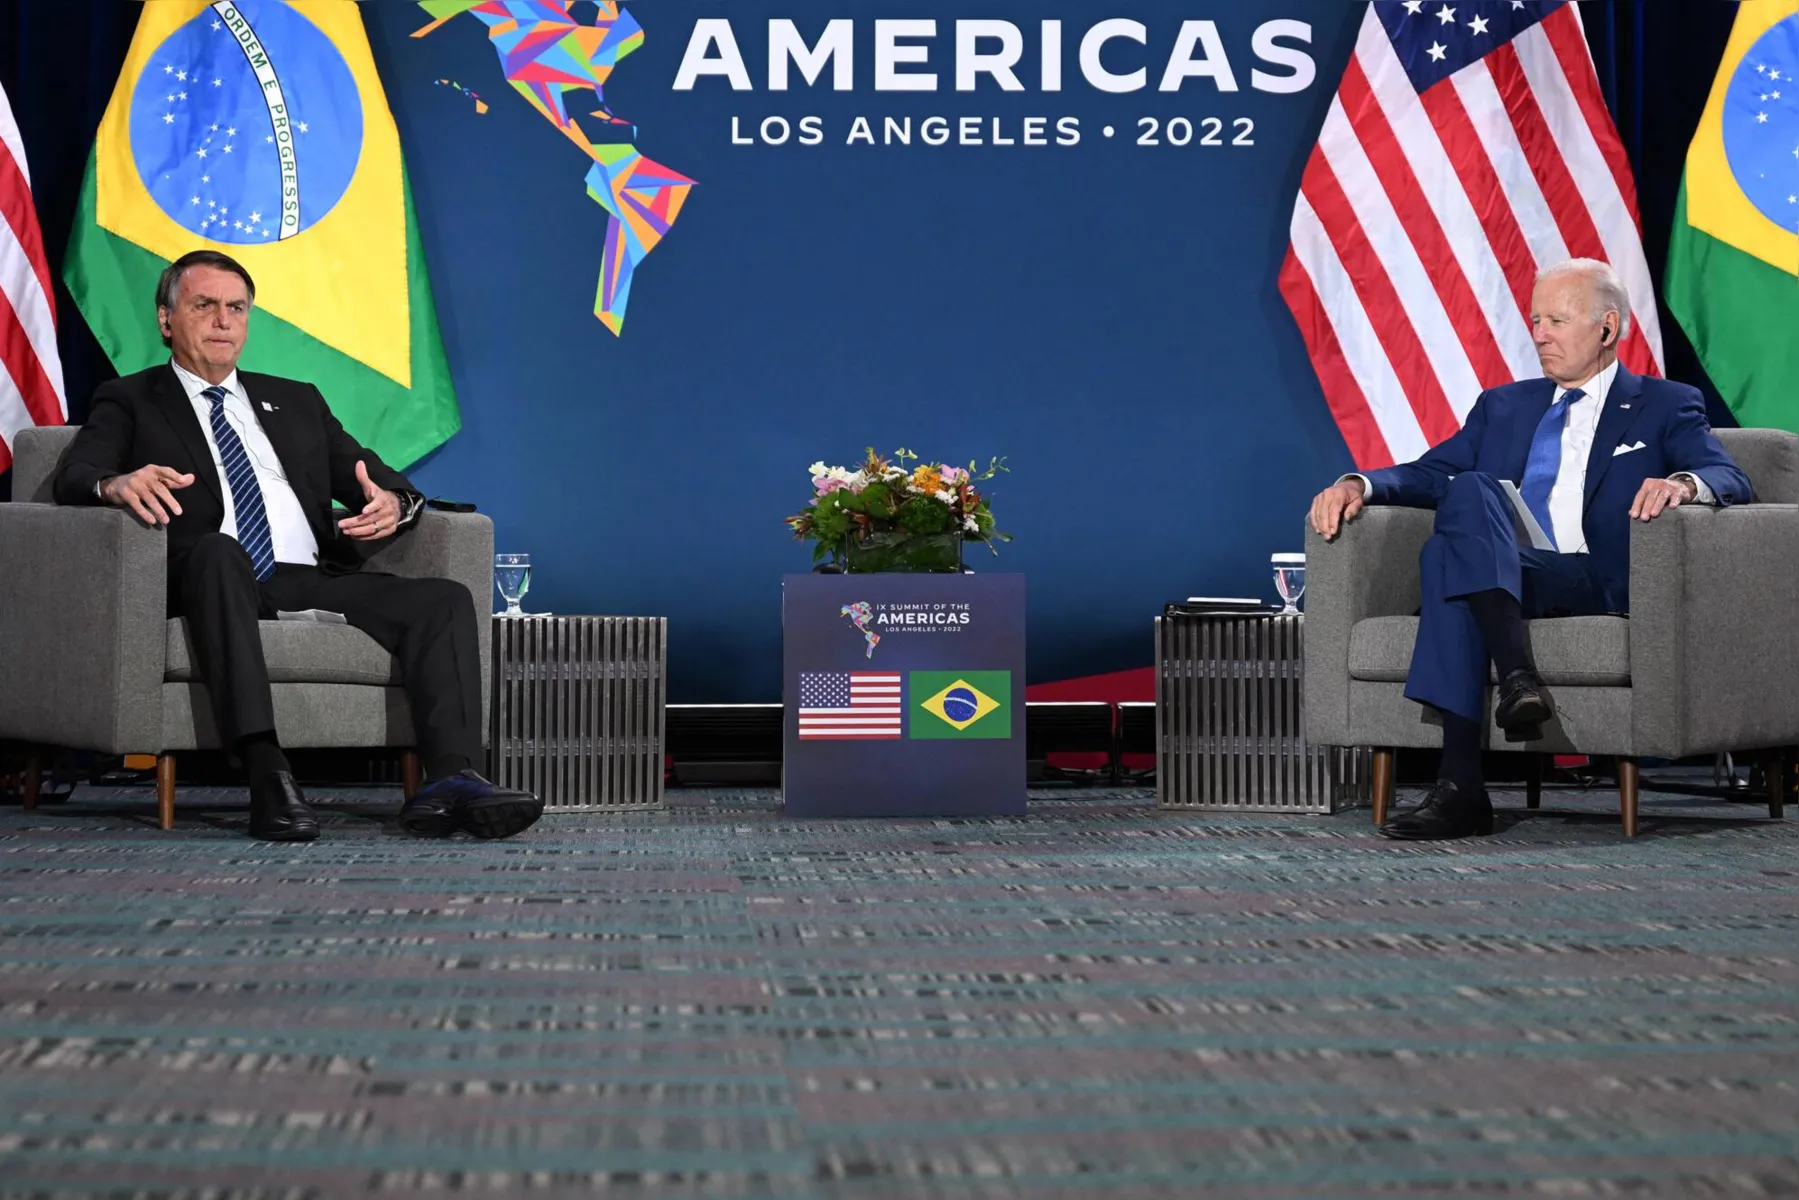 O presidente Jair Bolsonaro (PL) classificou o encontro que teve com o americano Joe Biden, na noite desta quinta (9), em Los Angeles de excepcional